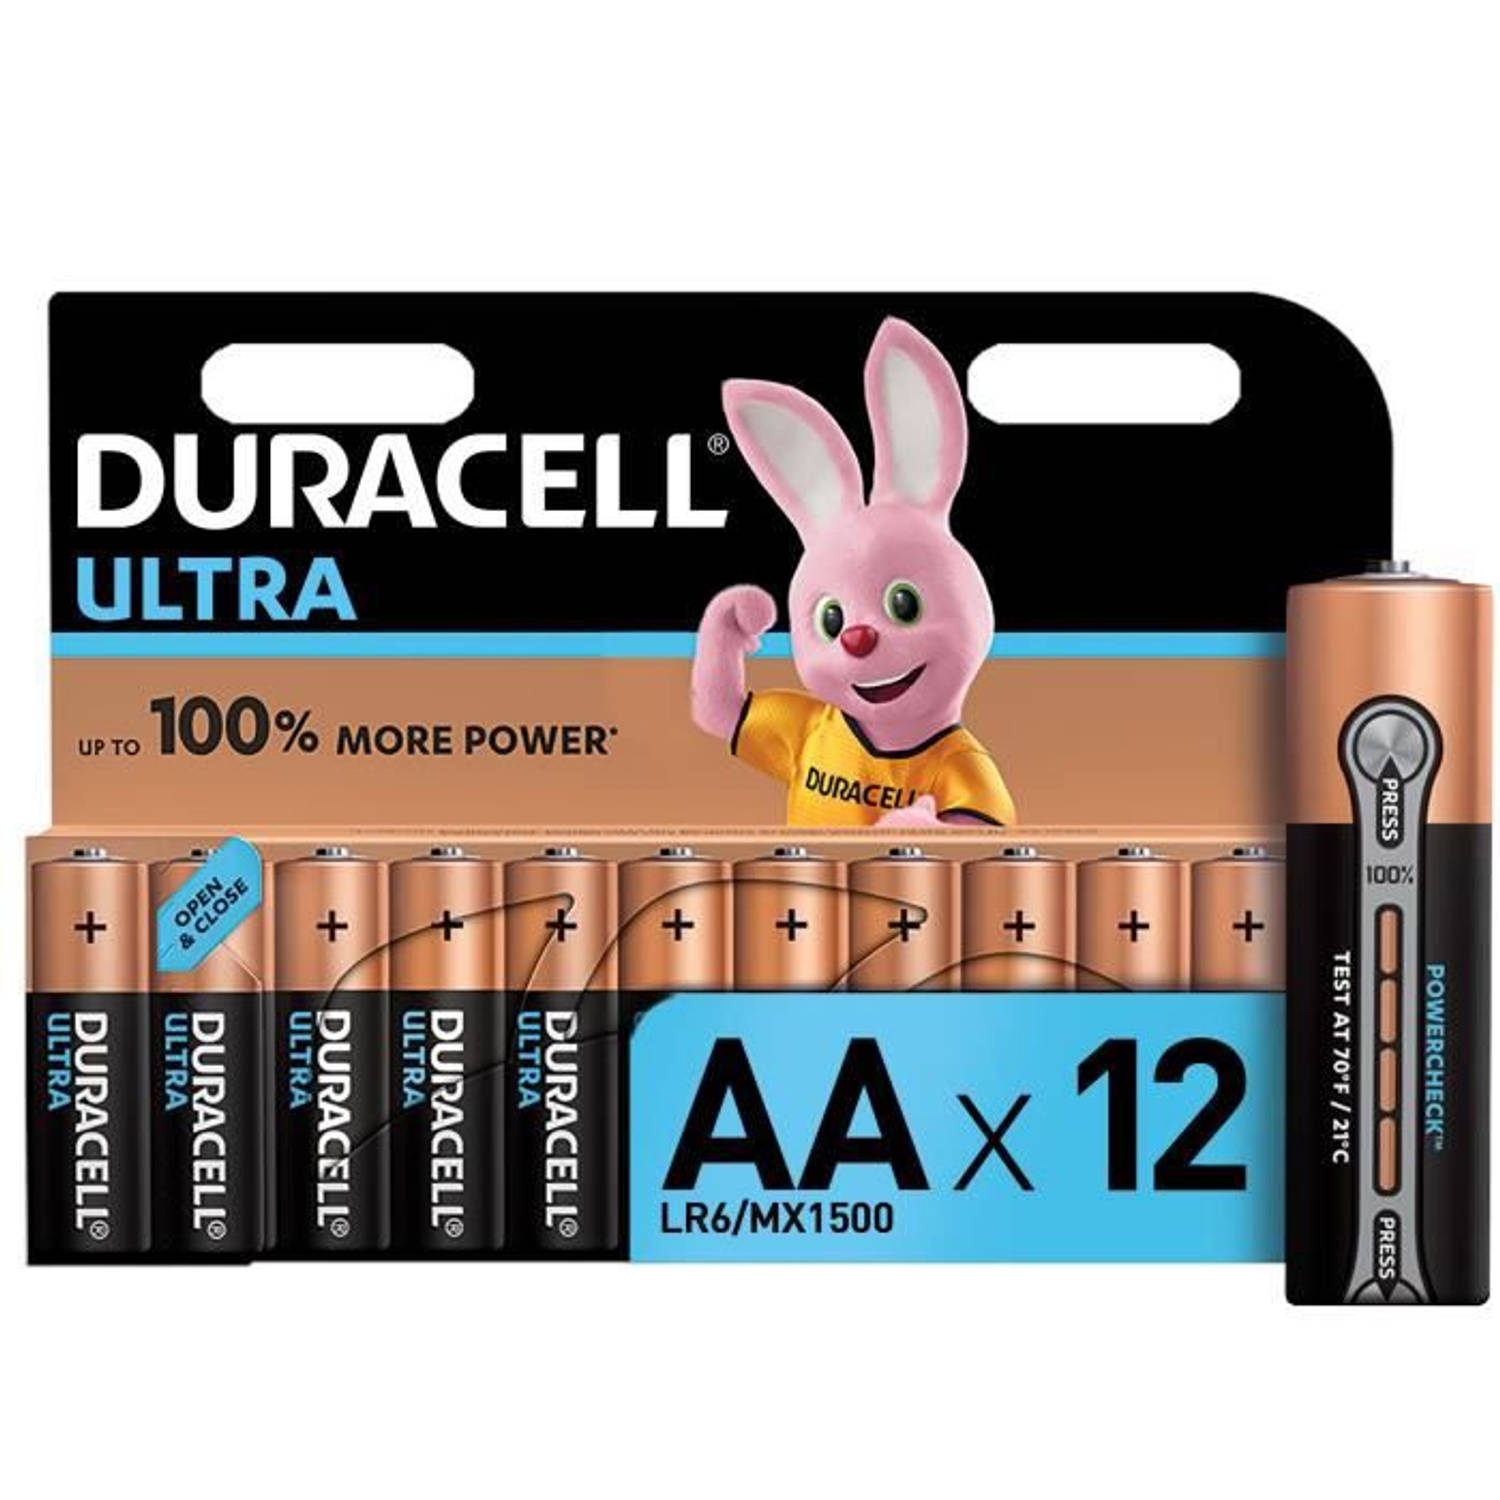 Duracell - Ultra Aa X 12